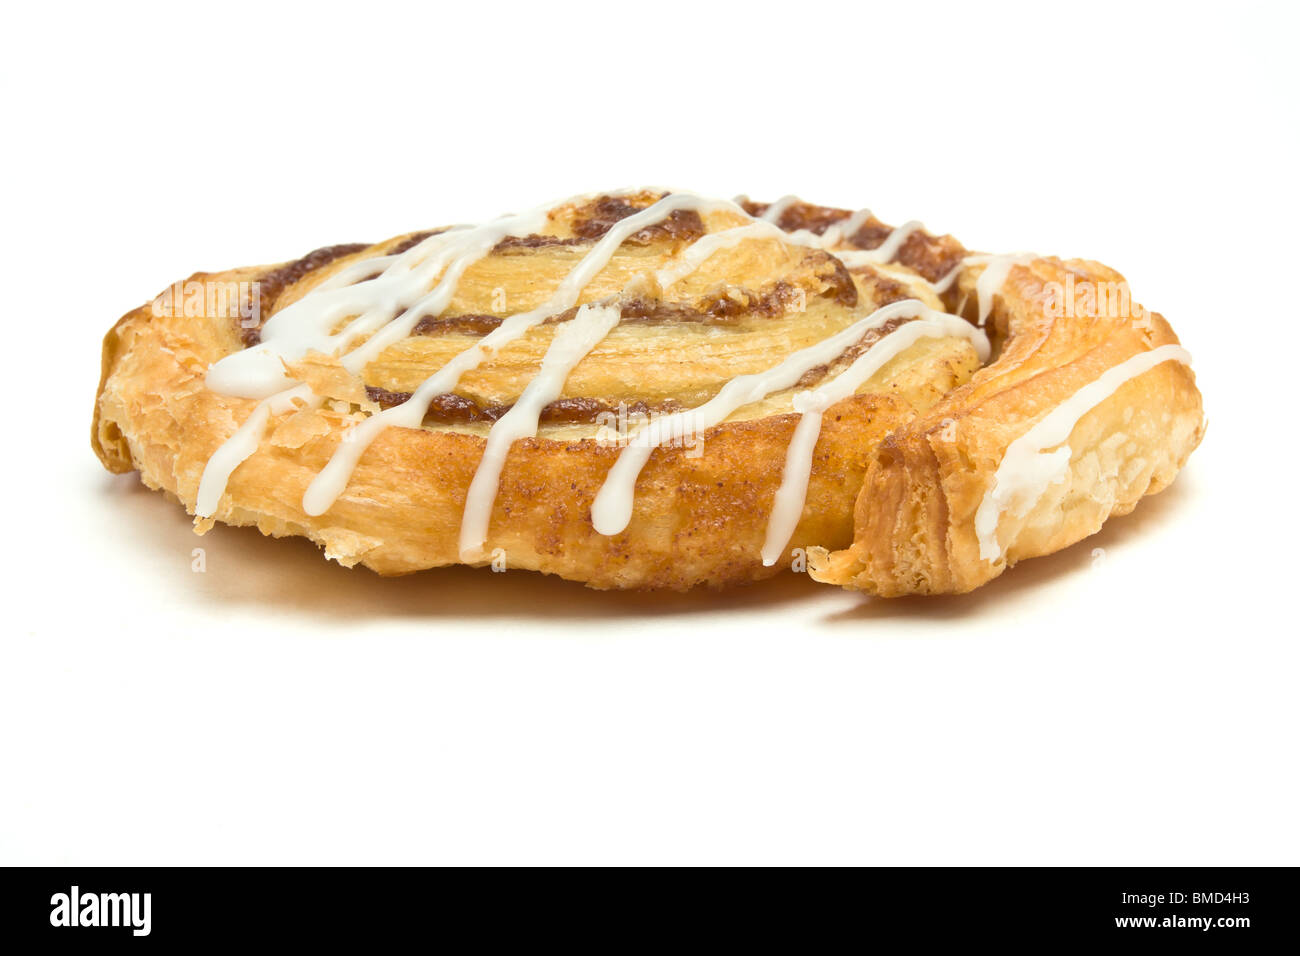 Cinnamon Danish Pastry swirl isolated against white background Stock Photo